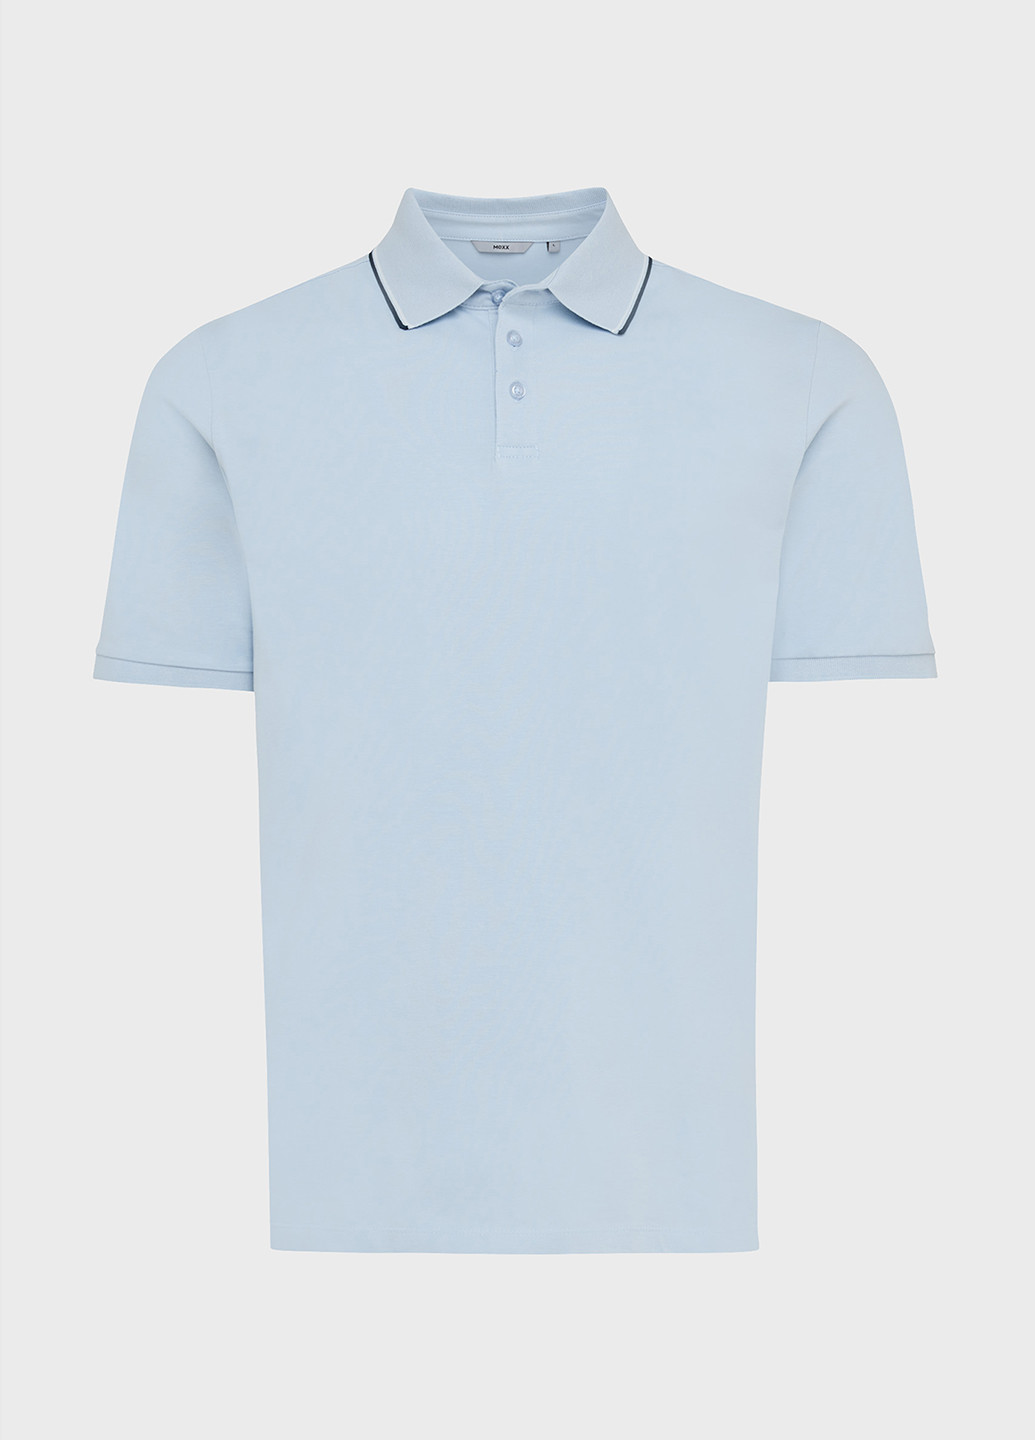 Голубой футболка-поло для мужчин Mexx однотонная